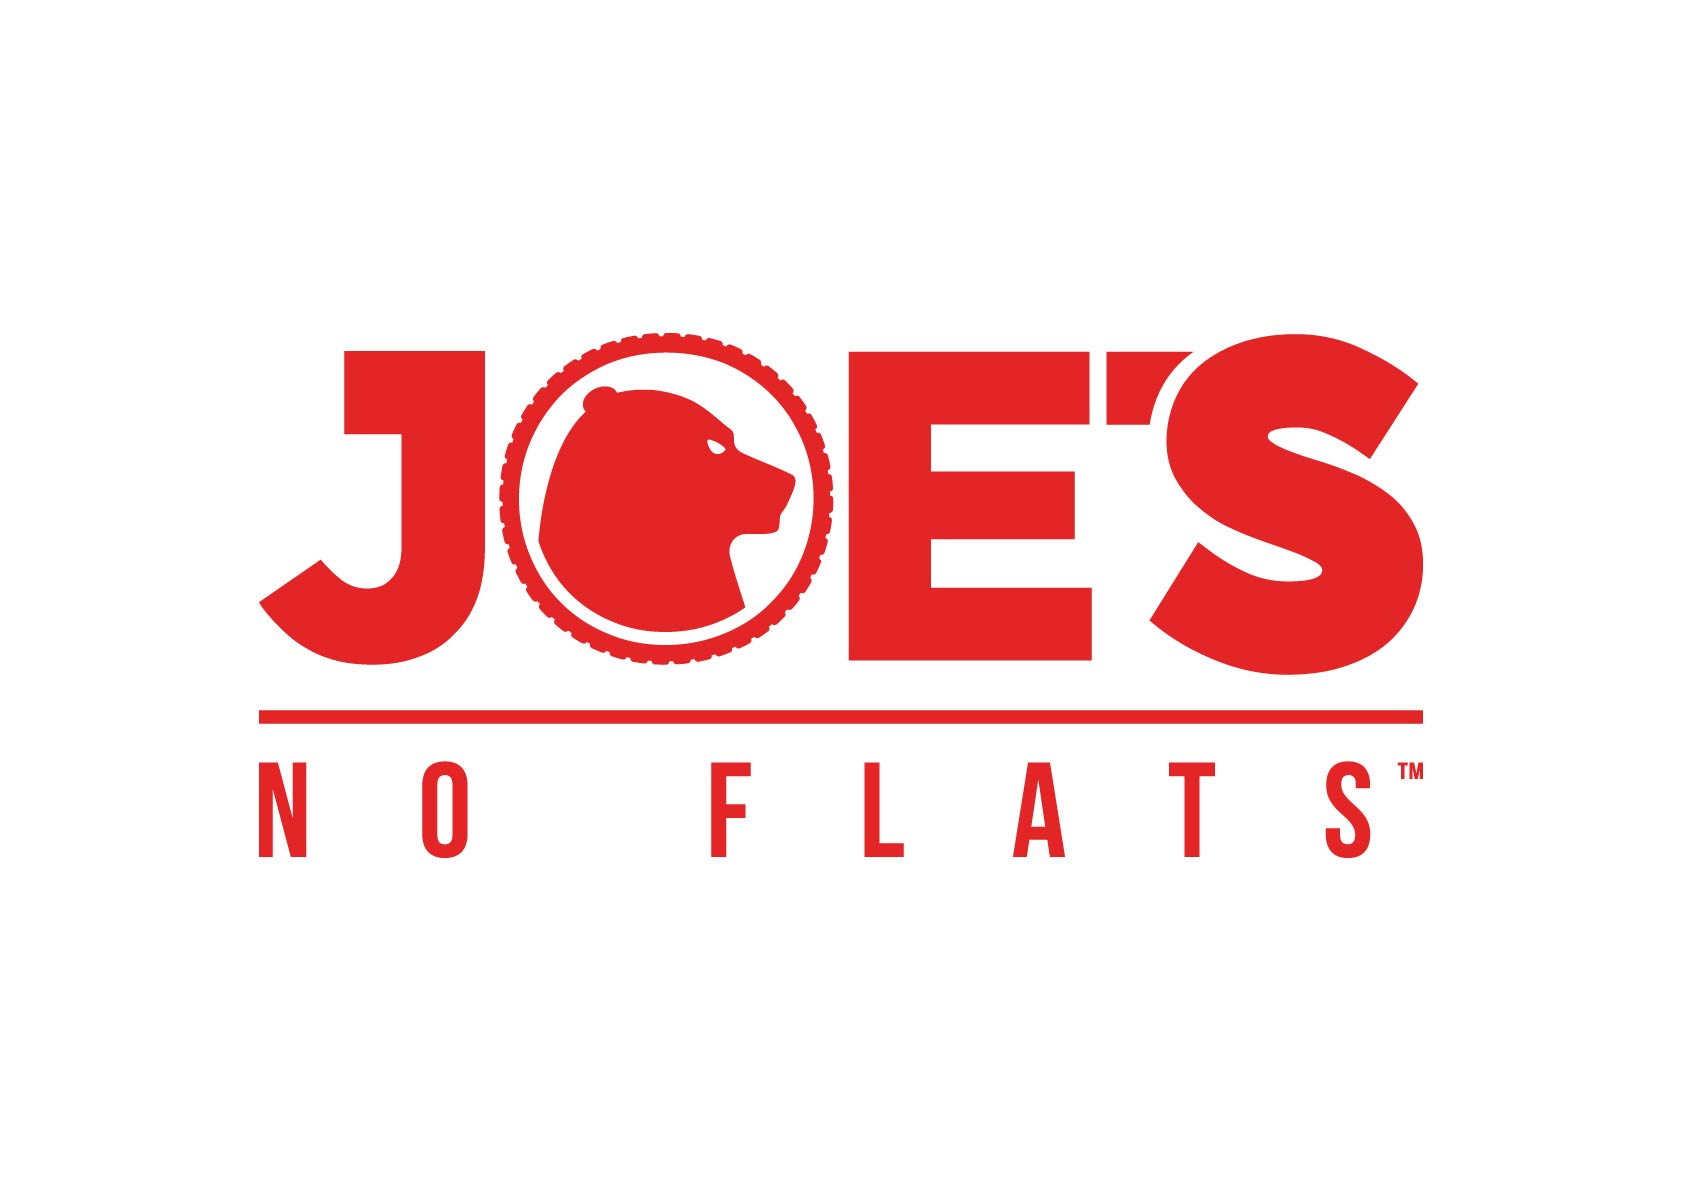 Joe's no flats